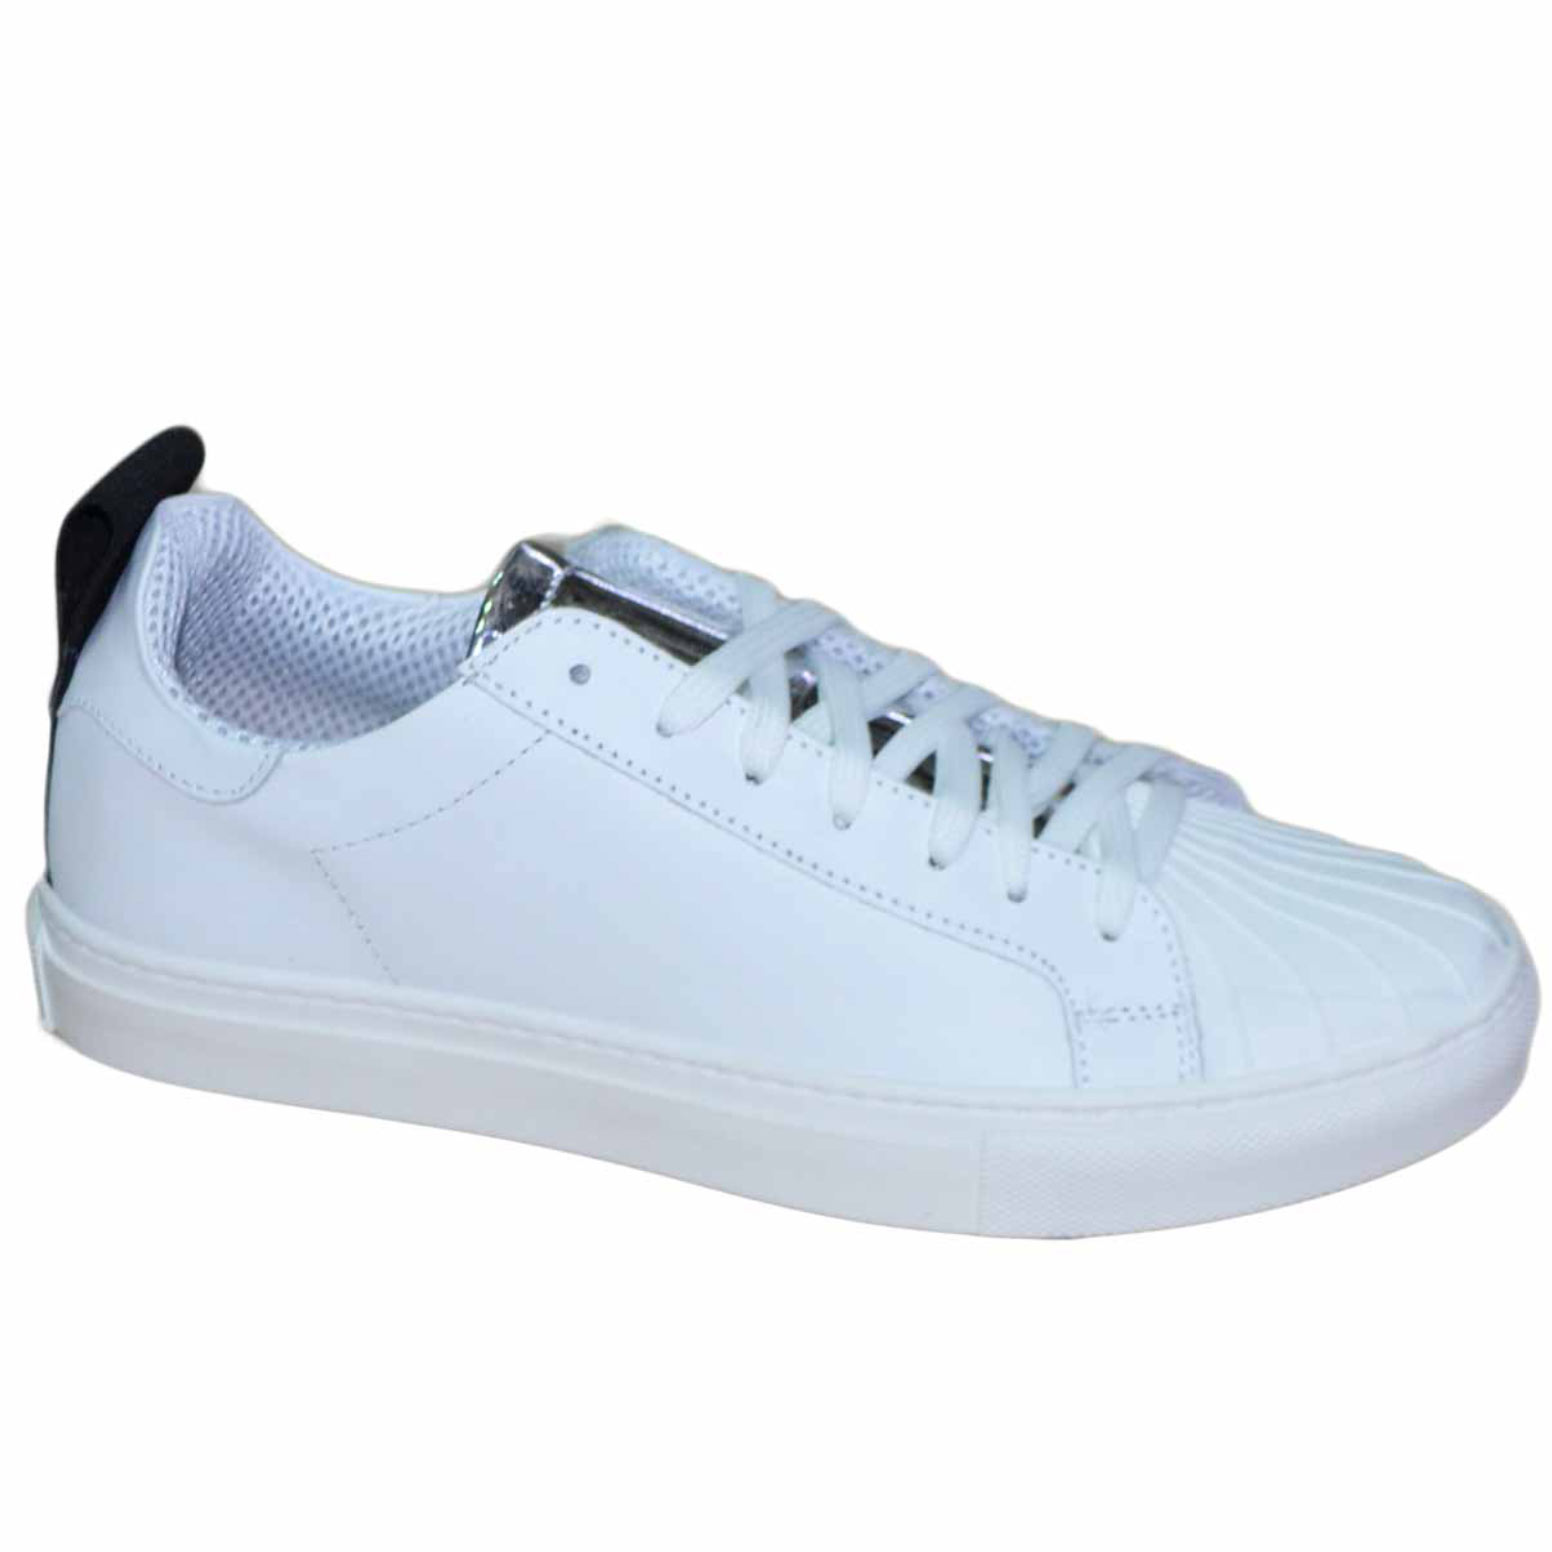 Sneakers bassa linguetta centrale laminata  Uomo Limited Elastico Punta gommata vera pelle bianco .